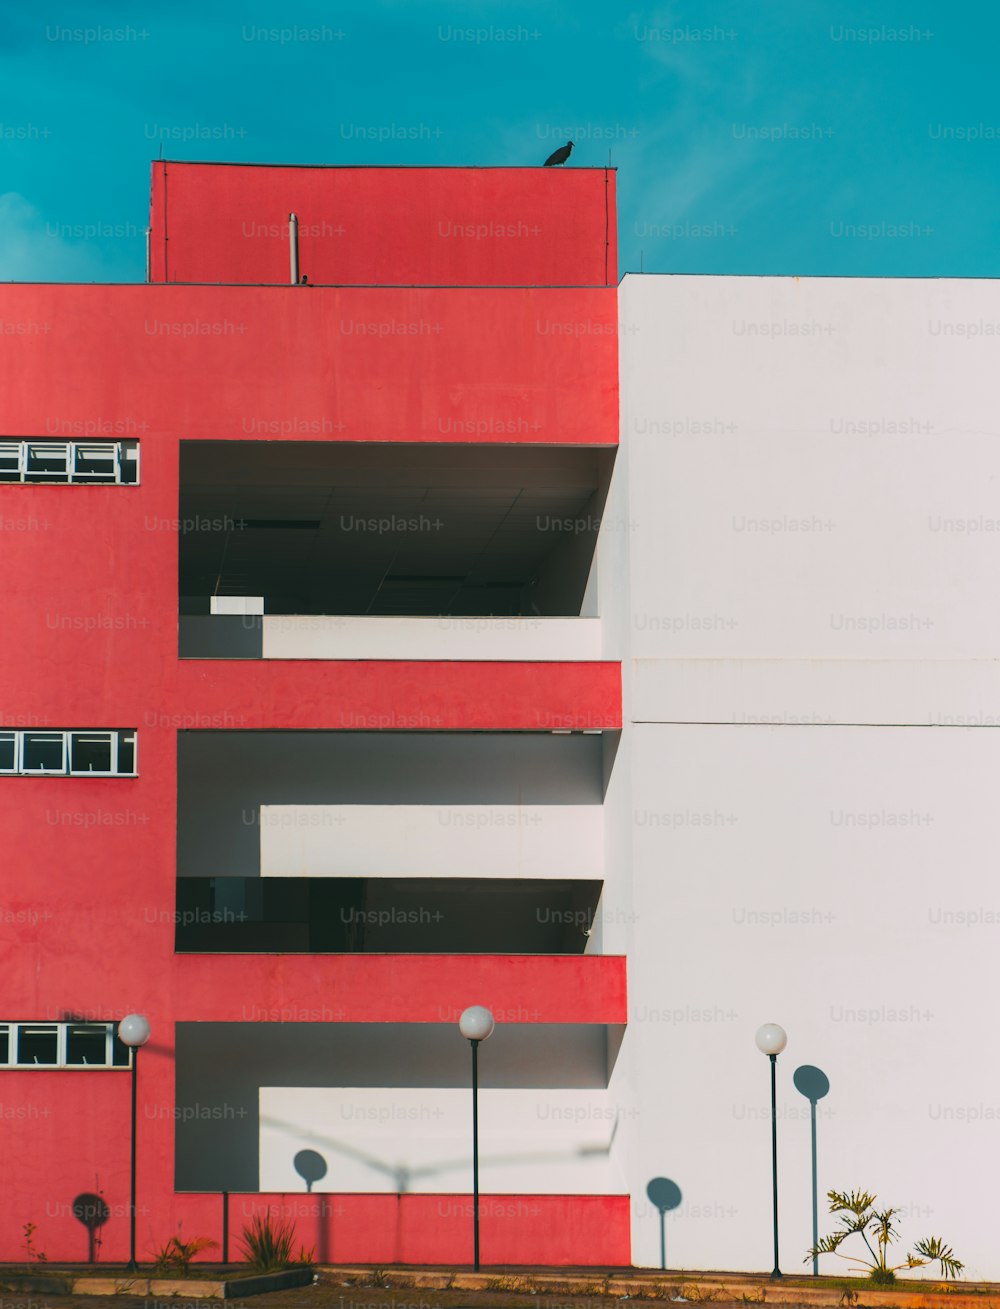 La fachada del edificio moderno se divide en dos: una parte de la fachada es roja y tiene balcones y ventanas, otra parte es blanca; linternas debajo, un pájaro enorme en el techo, geometría minimalista